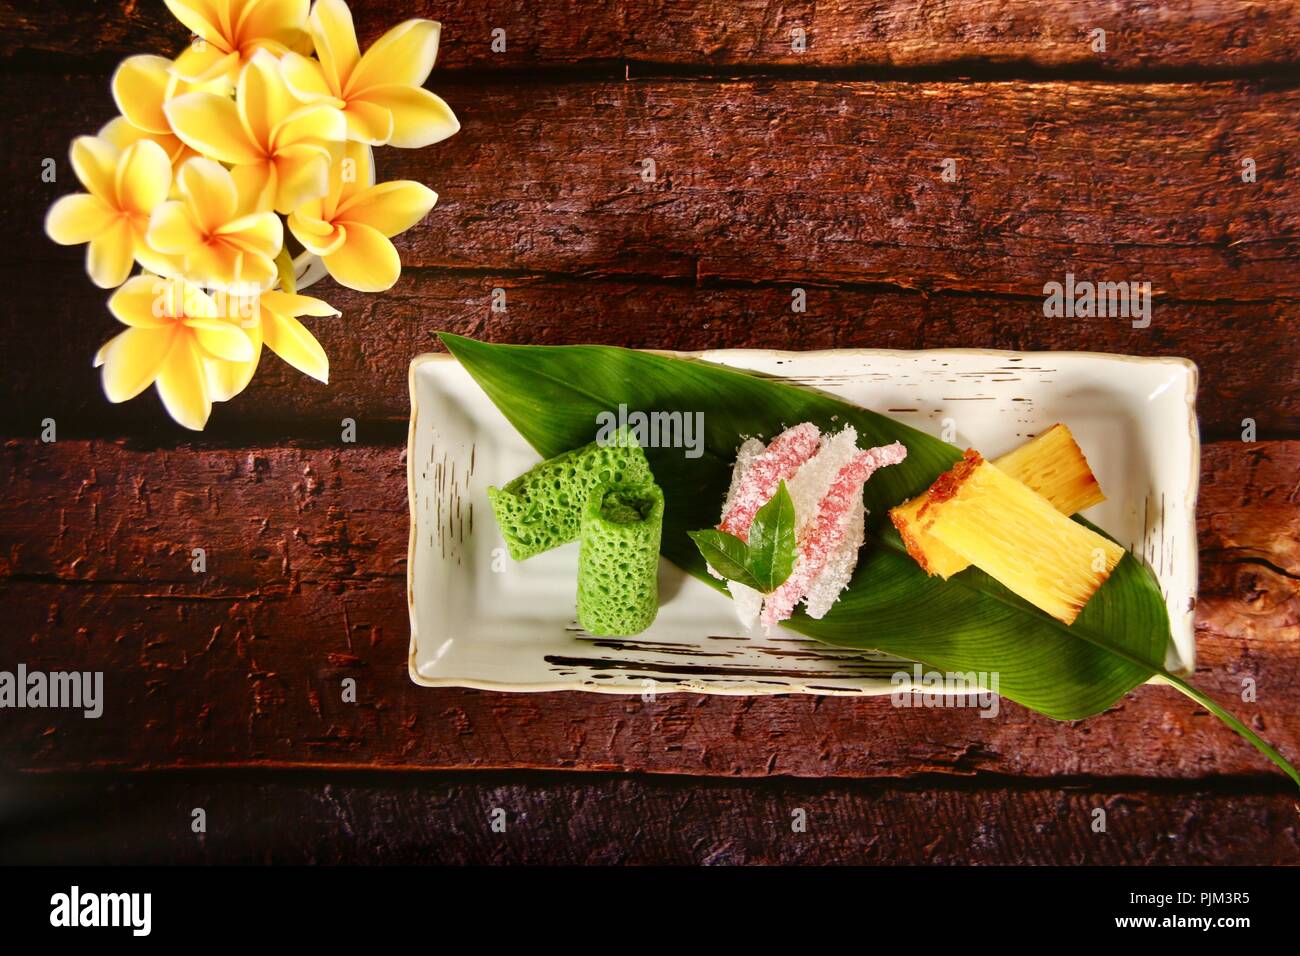 Jajanan Pasar, traditionellen indonesischen Kuchen Stockfoto